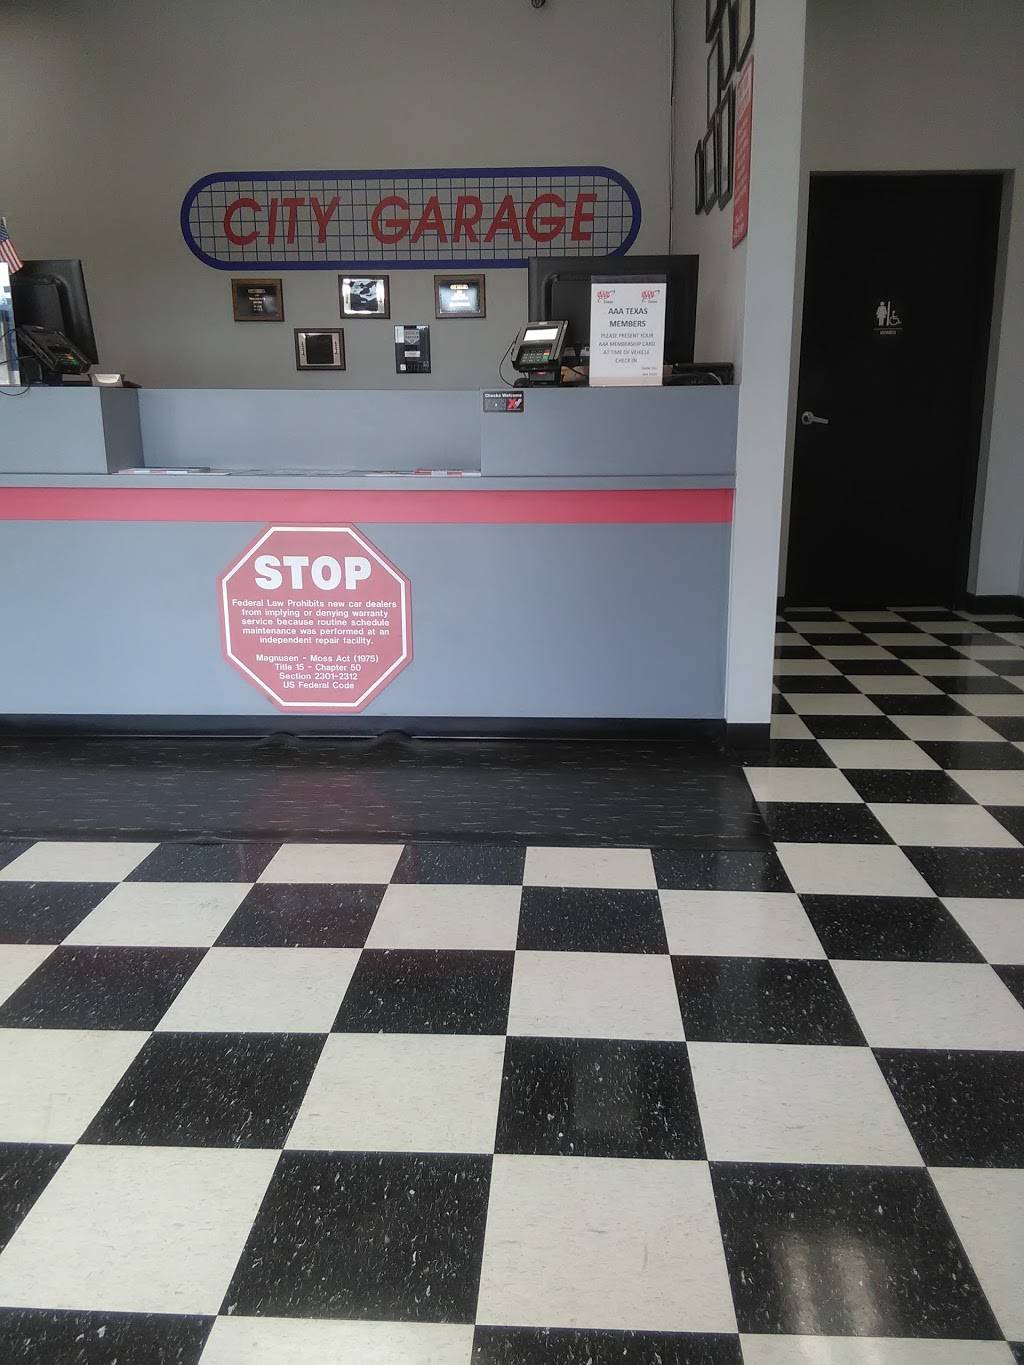 City Garage Auto Repair & Oil Change | 4015 Frankford Rd, Dallas, TX 75287, USA | Phone: (972) 713-6666